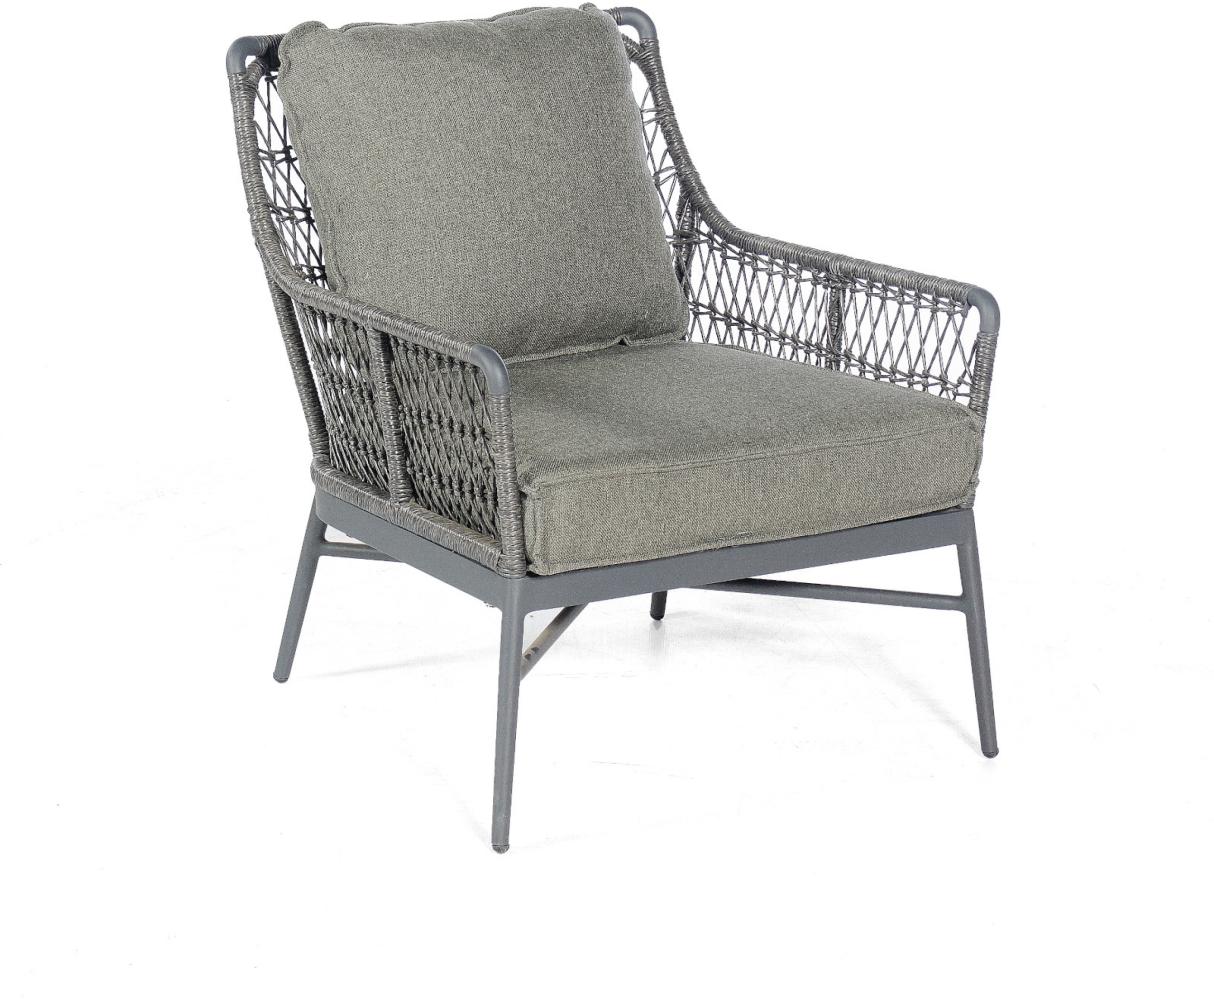 Sonnenpartner Loungesessel Retro Aluminium mit PE-Bespannung light coal Relaxsessel Garten-Sessel Bild 1